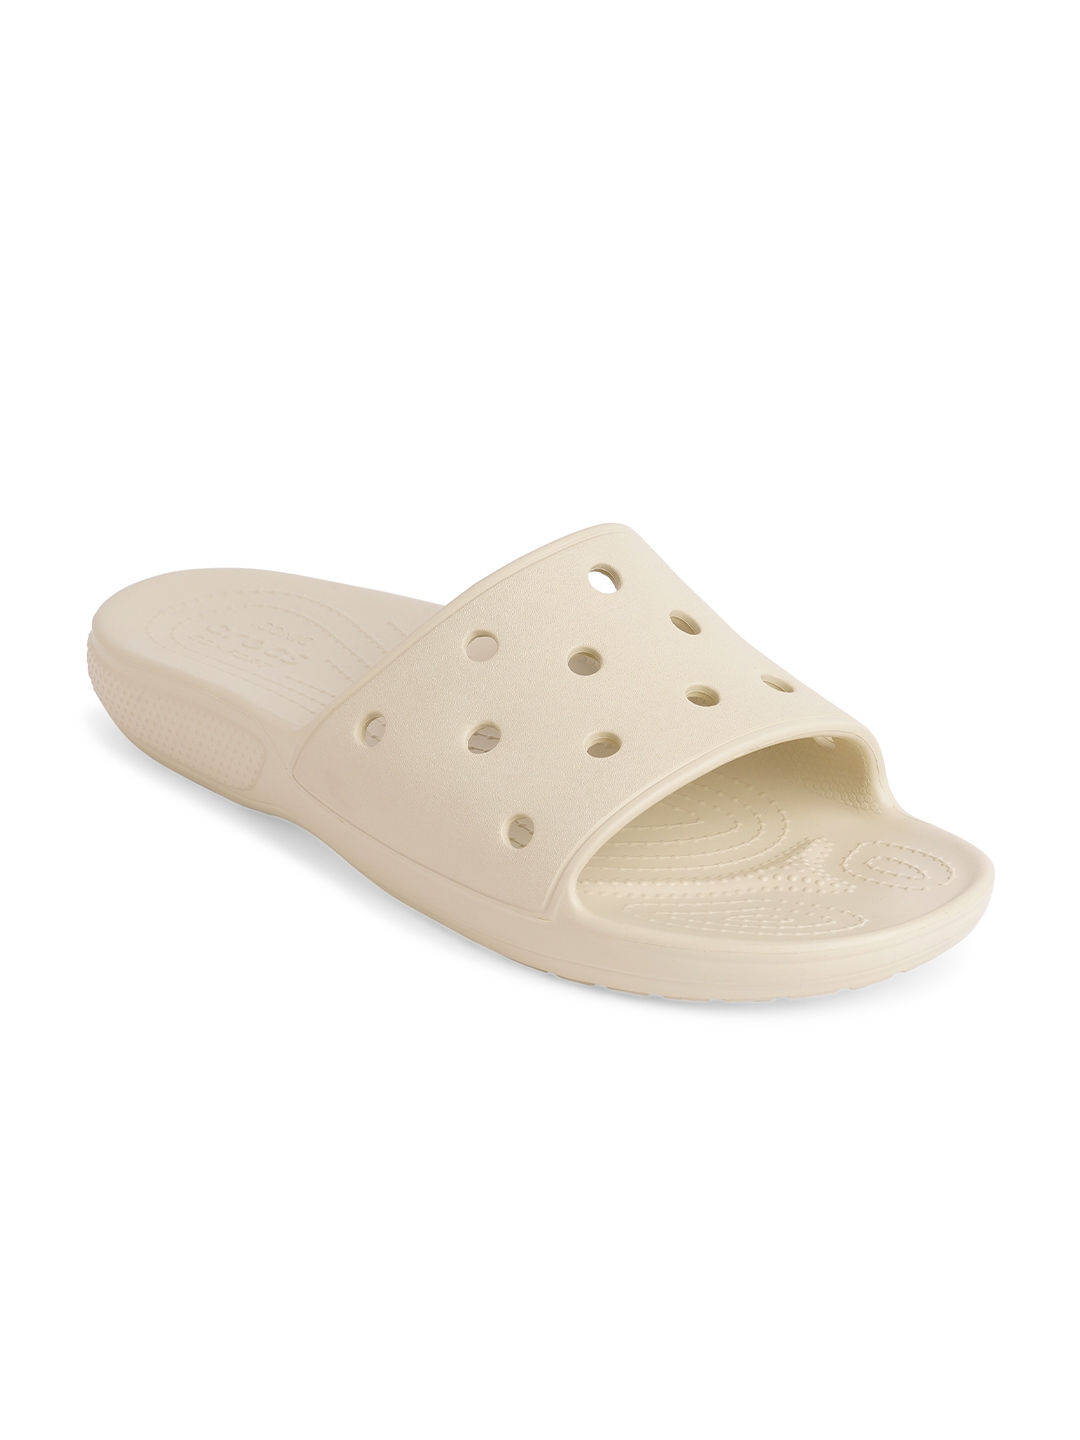 Buy Crocs Unisex Off White Sliders - Flip Flops for Unisex 17264162 ...